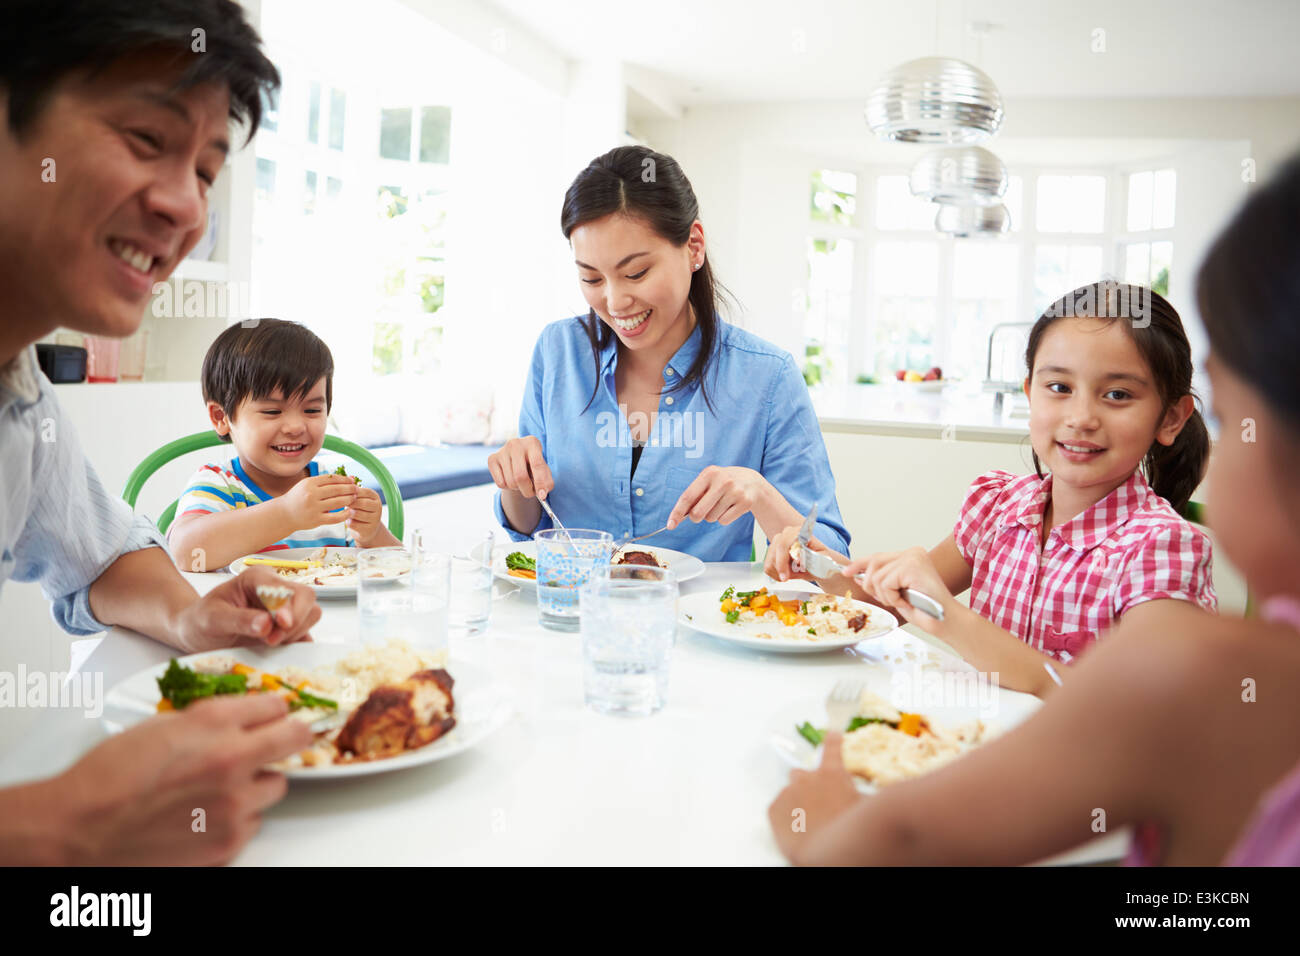 Famiglia asiatica seduta a tavola a mangiare mangiare insieme Foto Stock